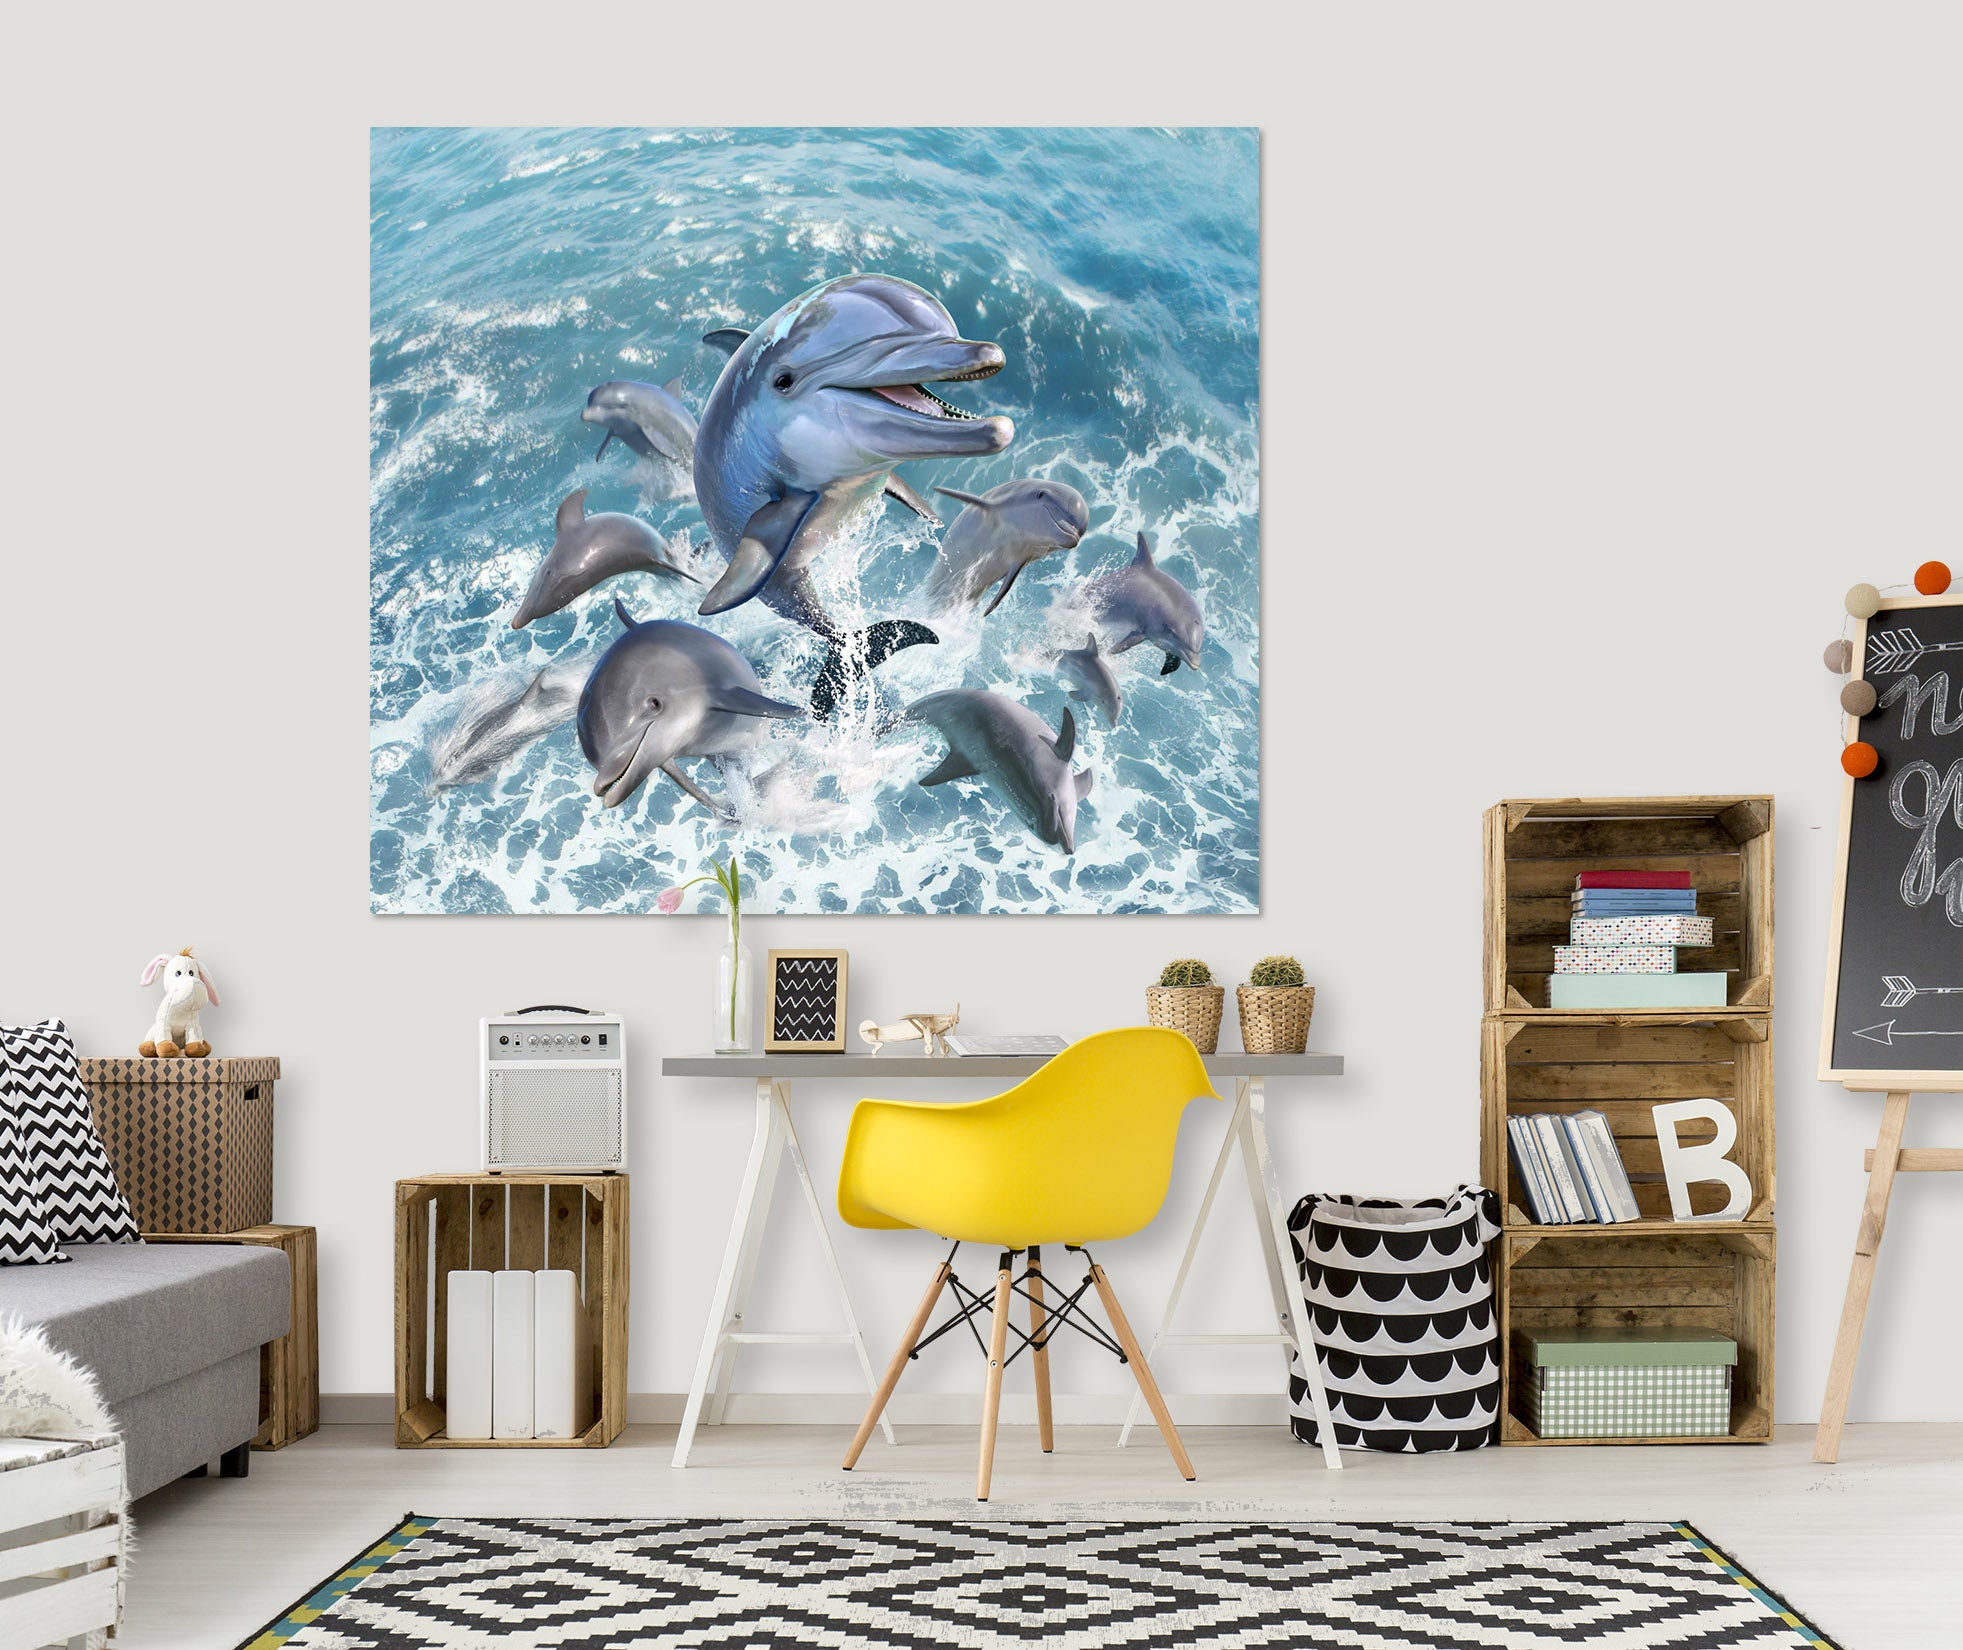 3D Dolphin Jump 015 Jerry LoFaro Wall Sticker